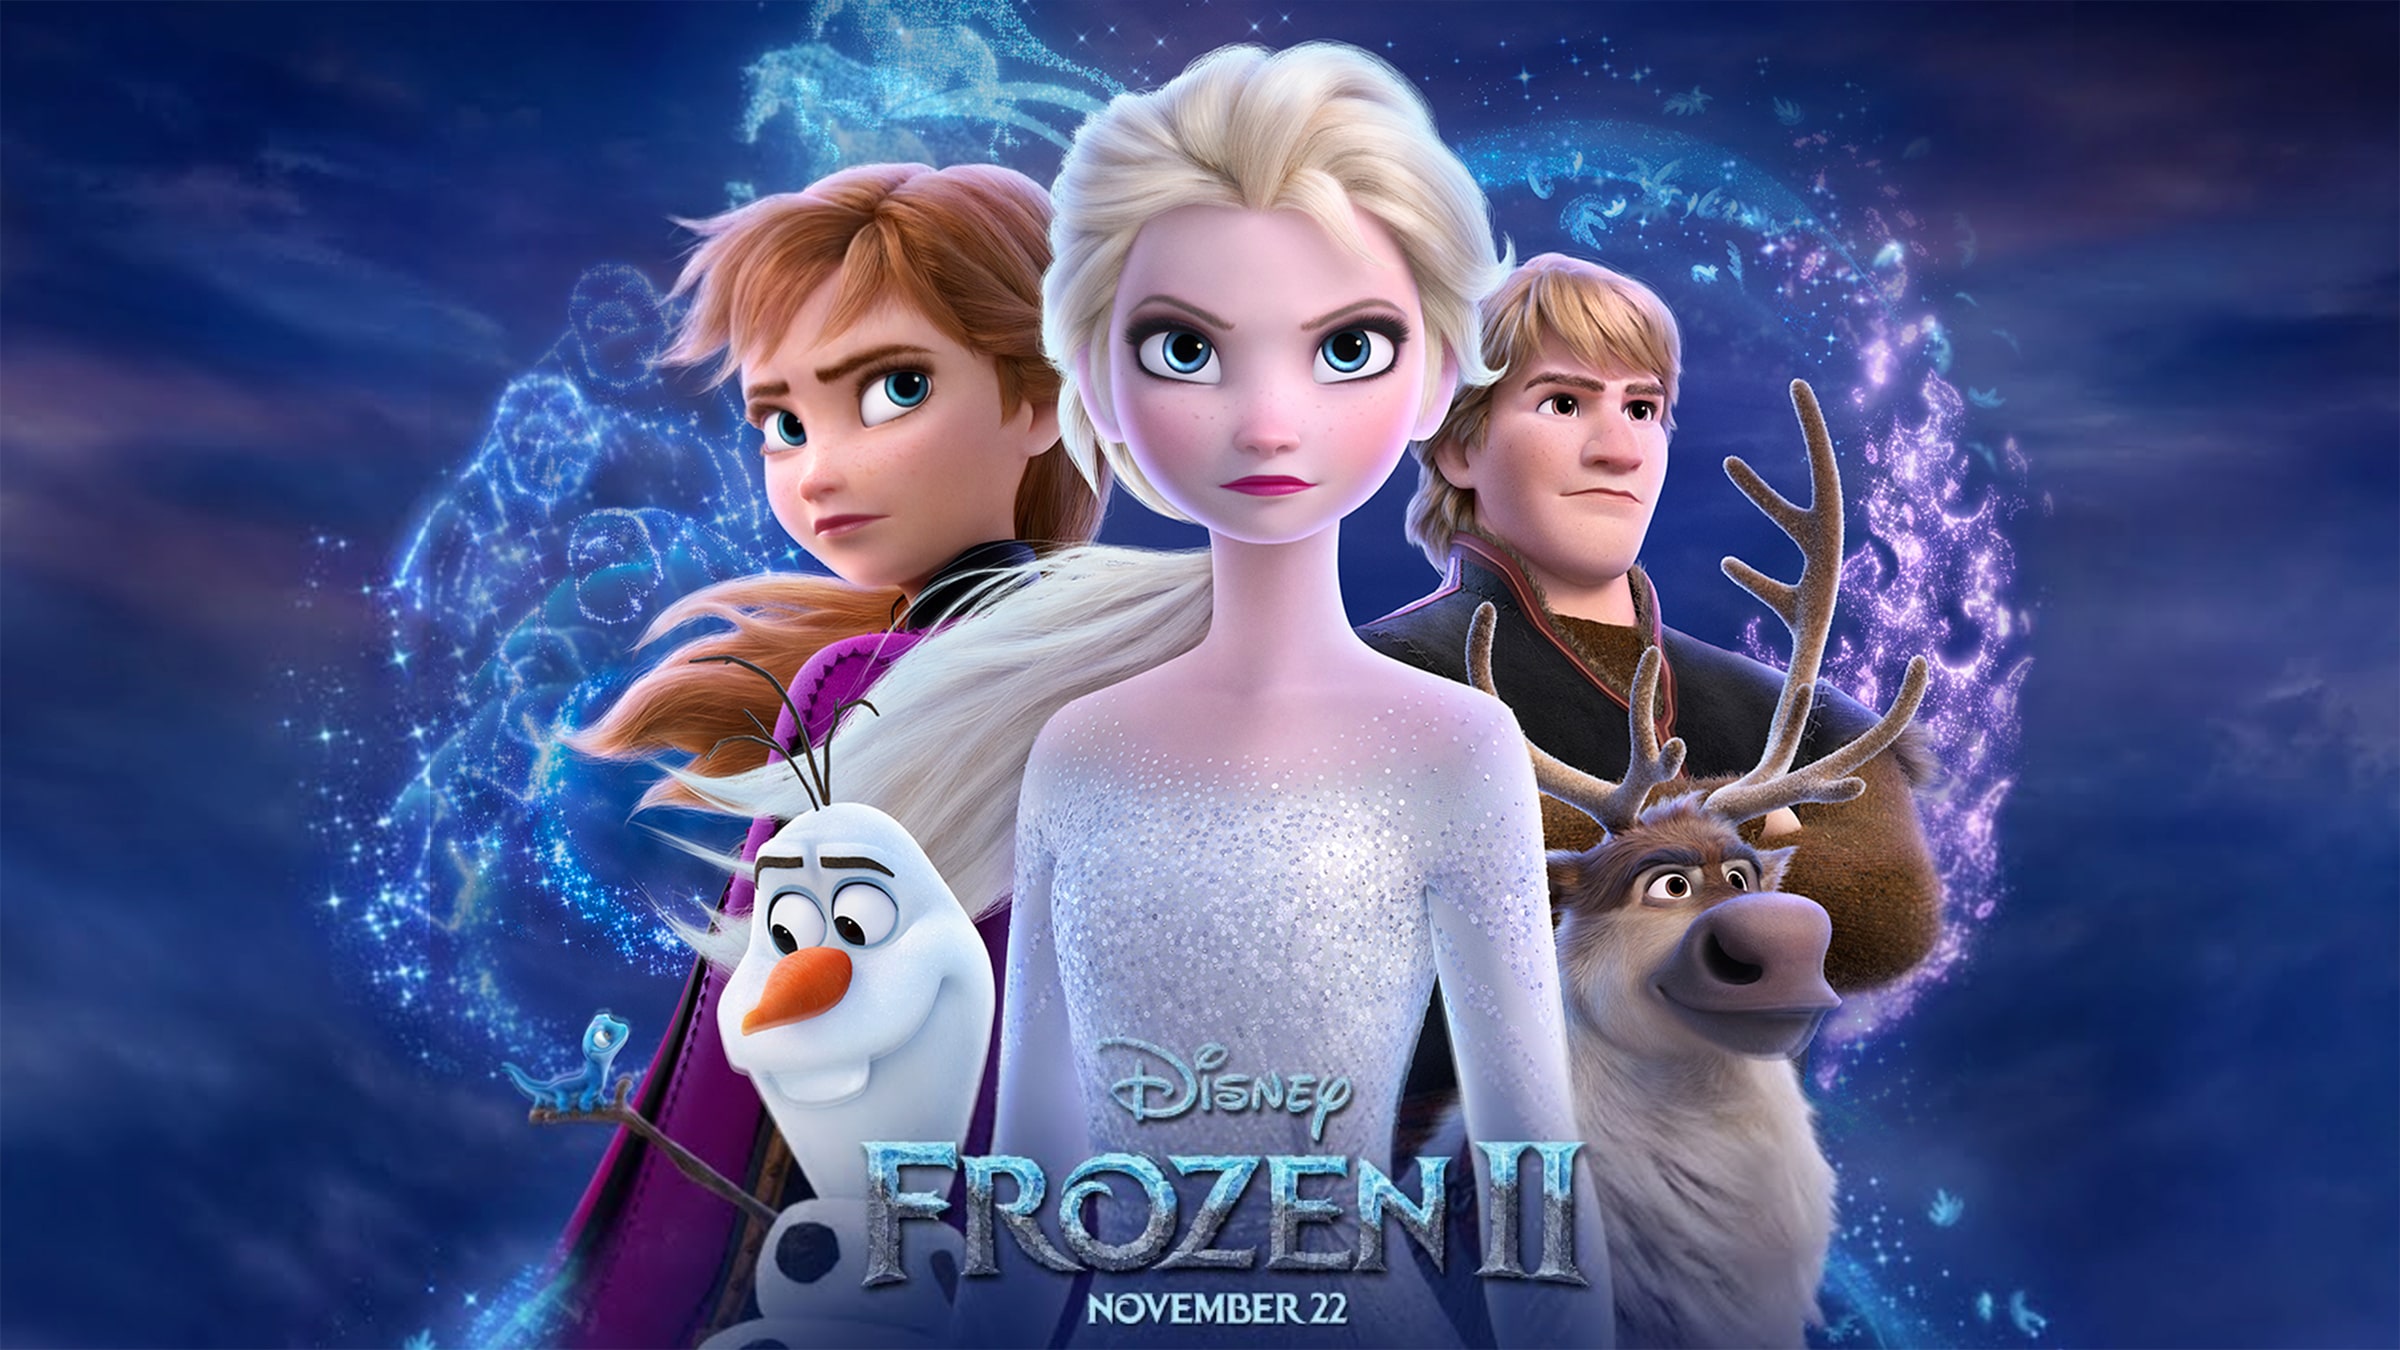 映画『アナと雪の女王2』主題歌「イントゥ・ジ・アンノウン」映像初公開&サントラ発表